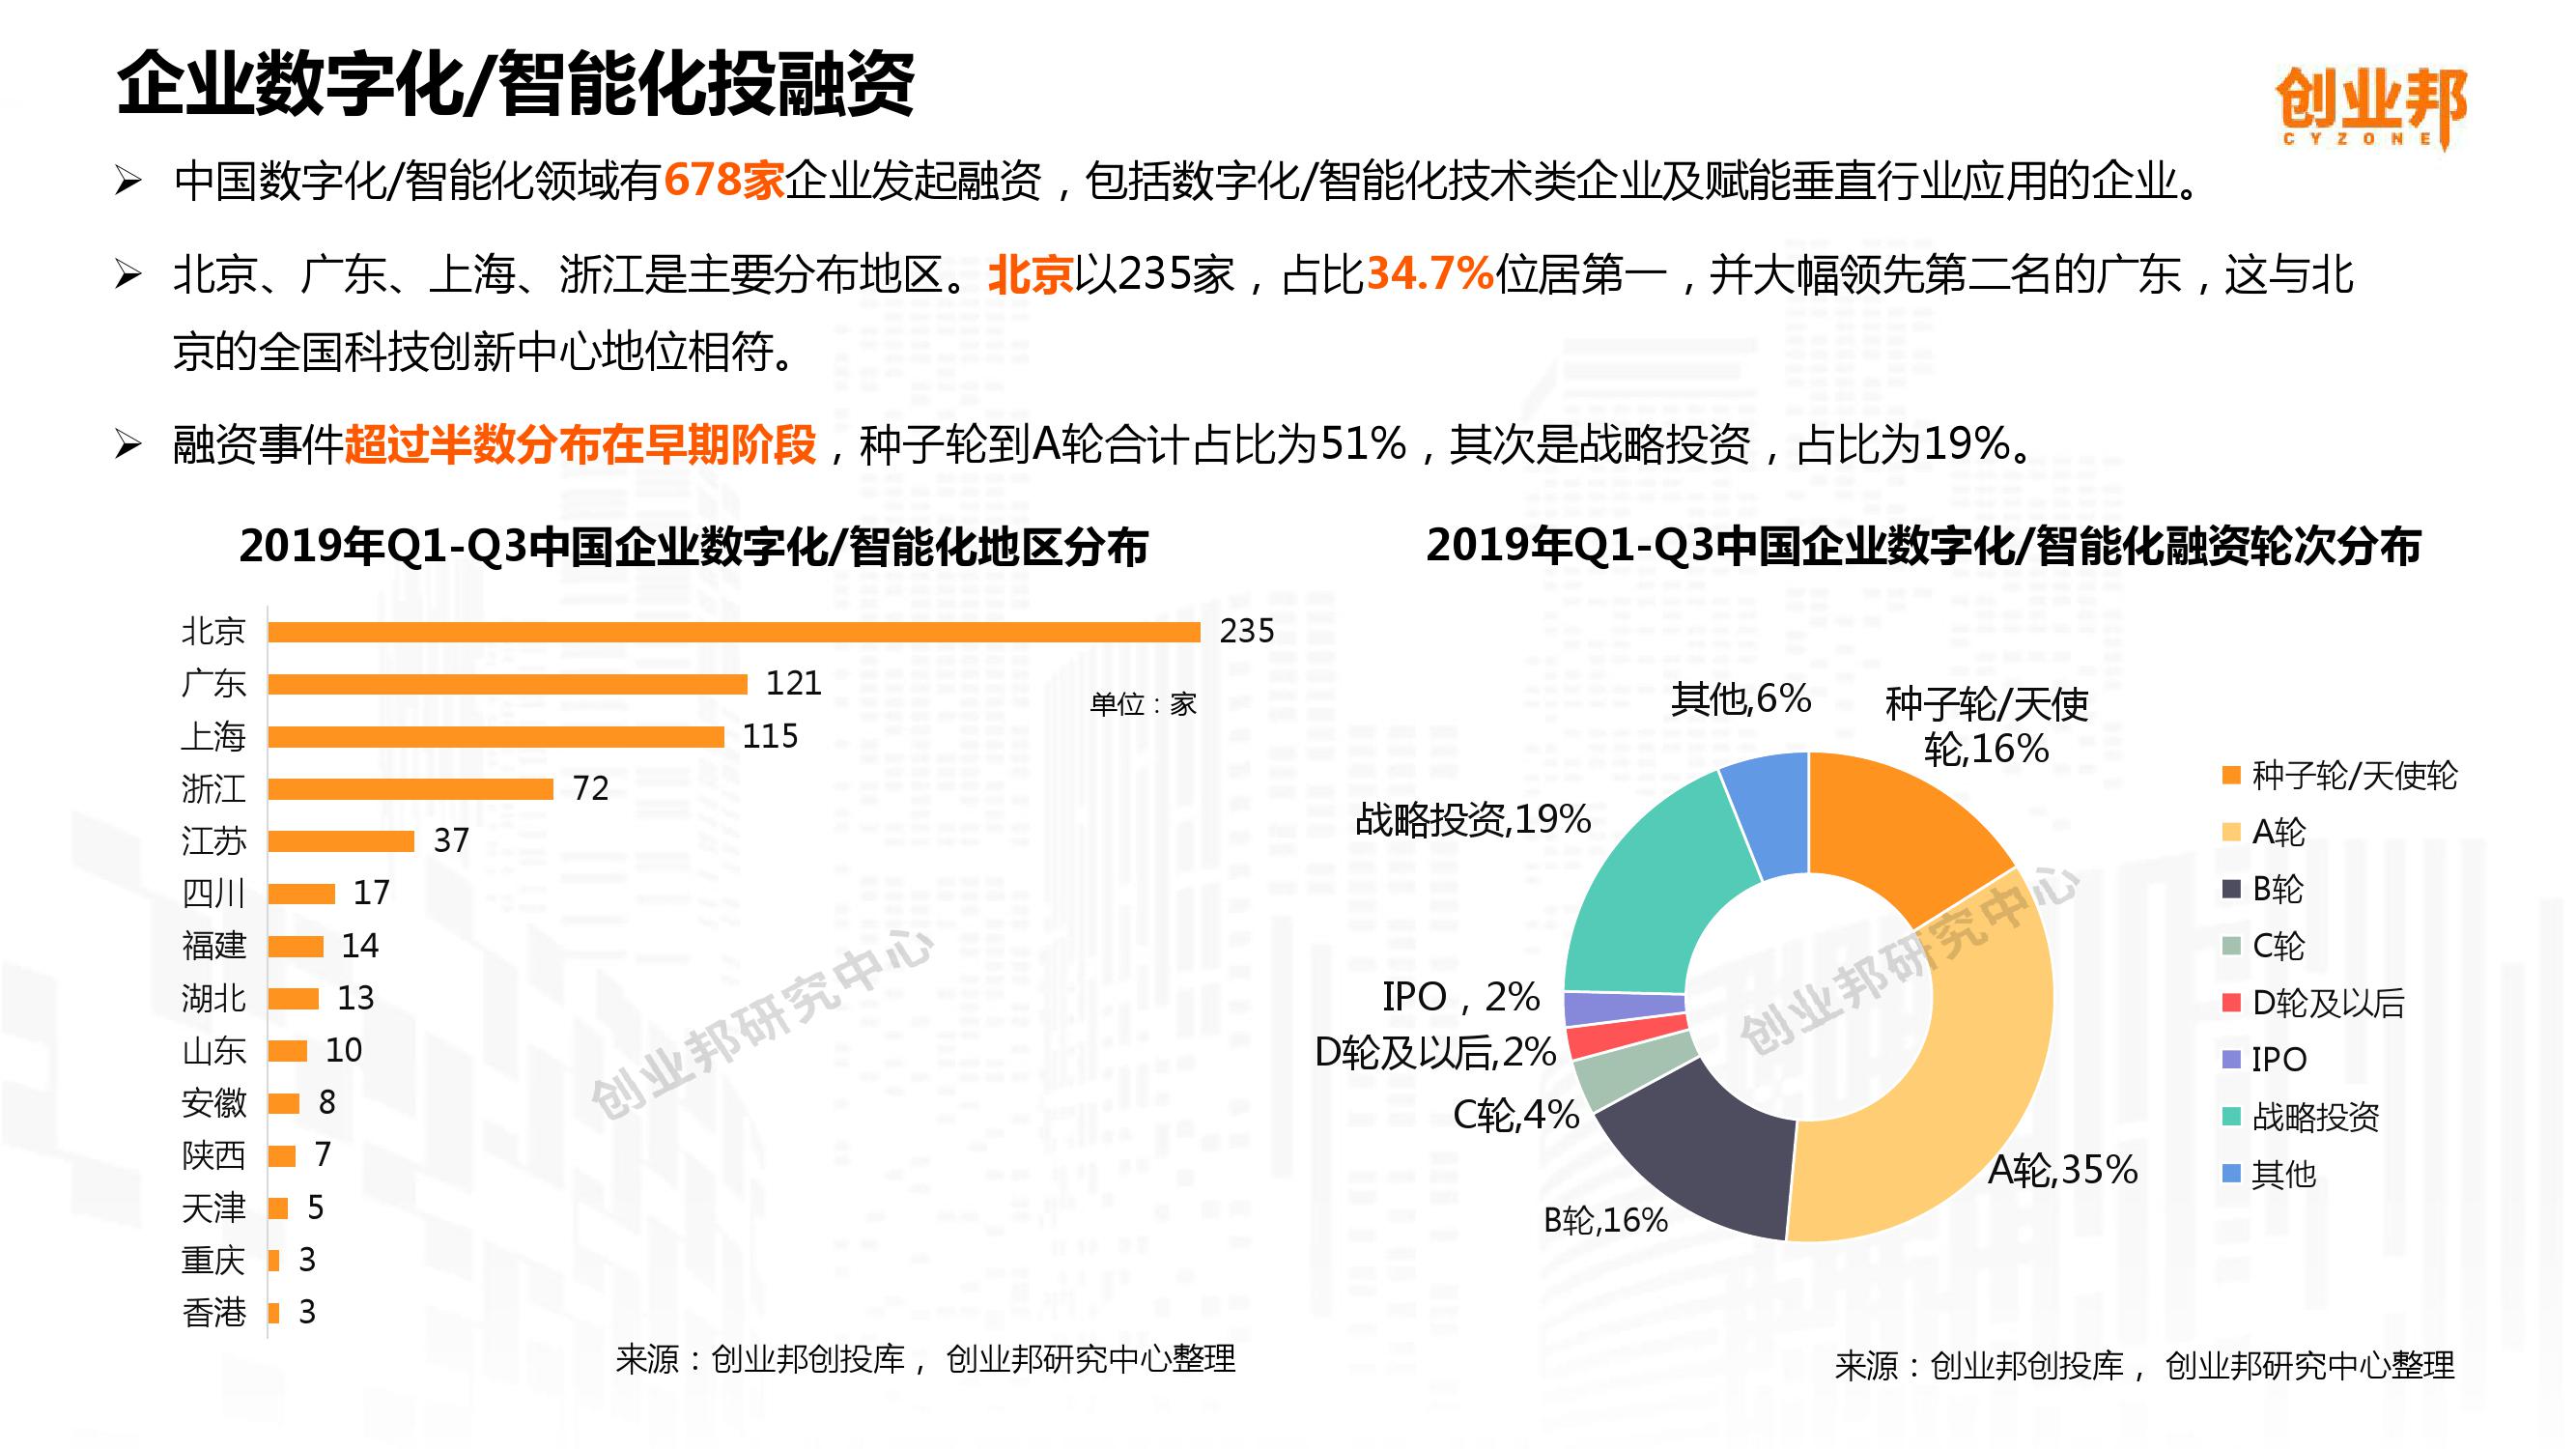 2019中国企业数字化智能化研究报告_000011-3